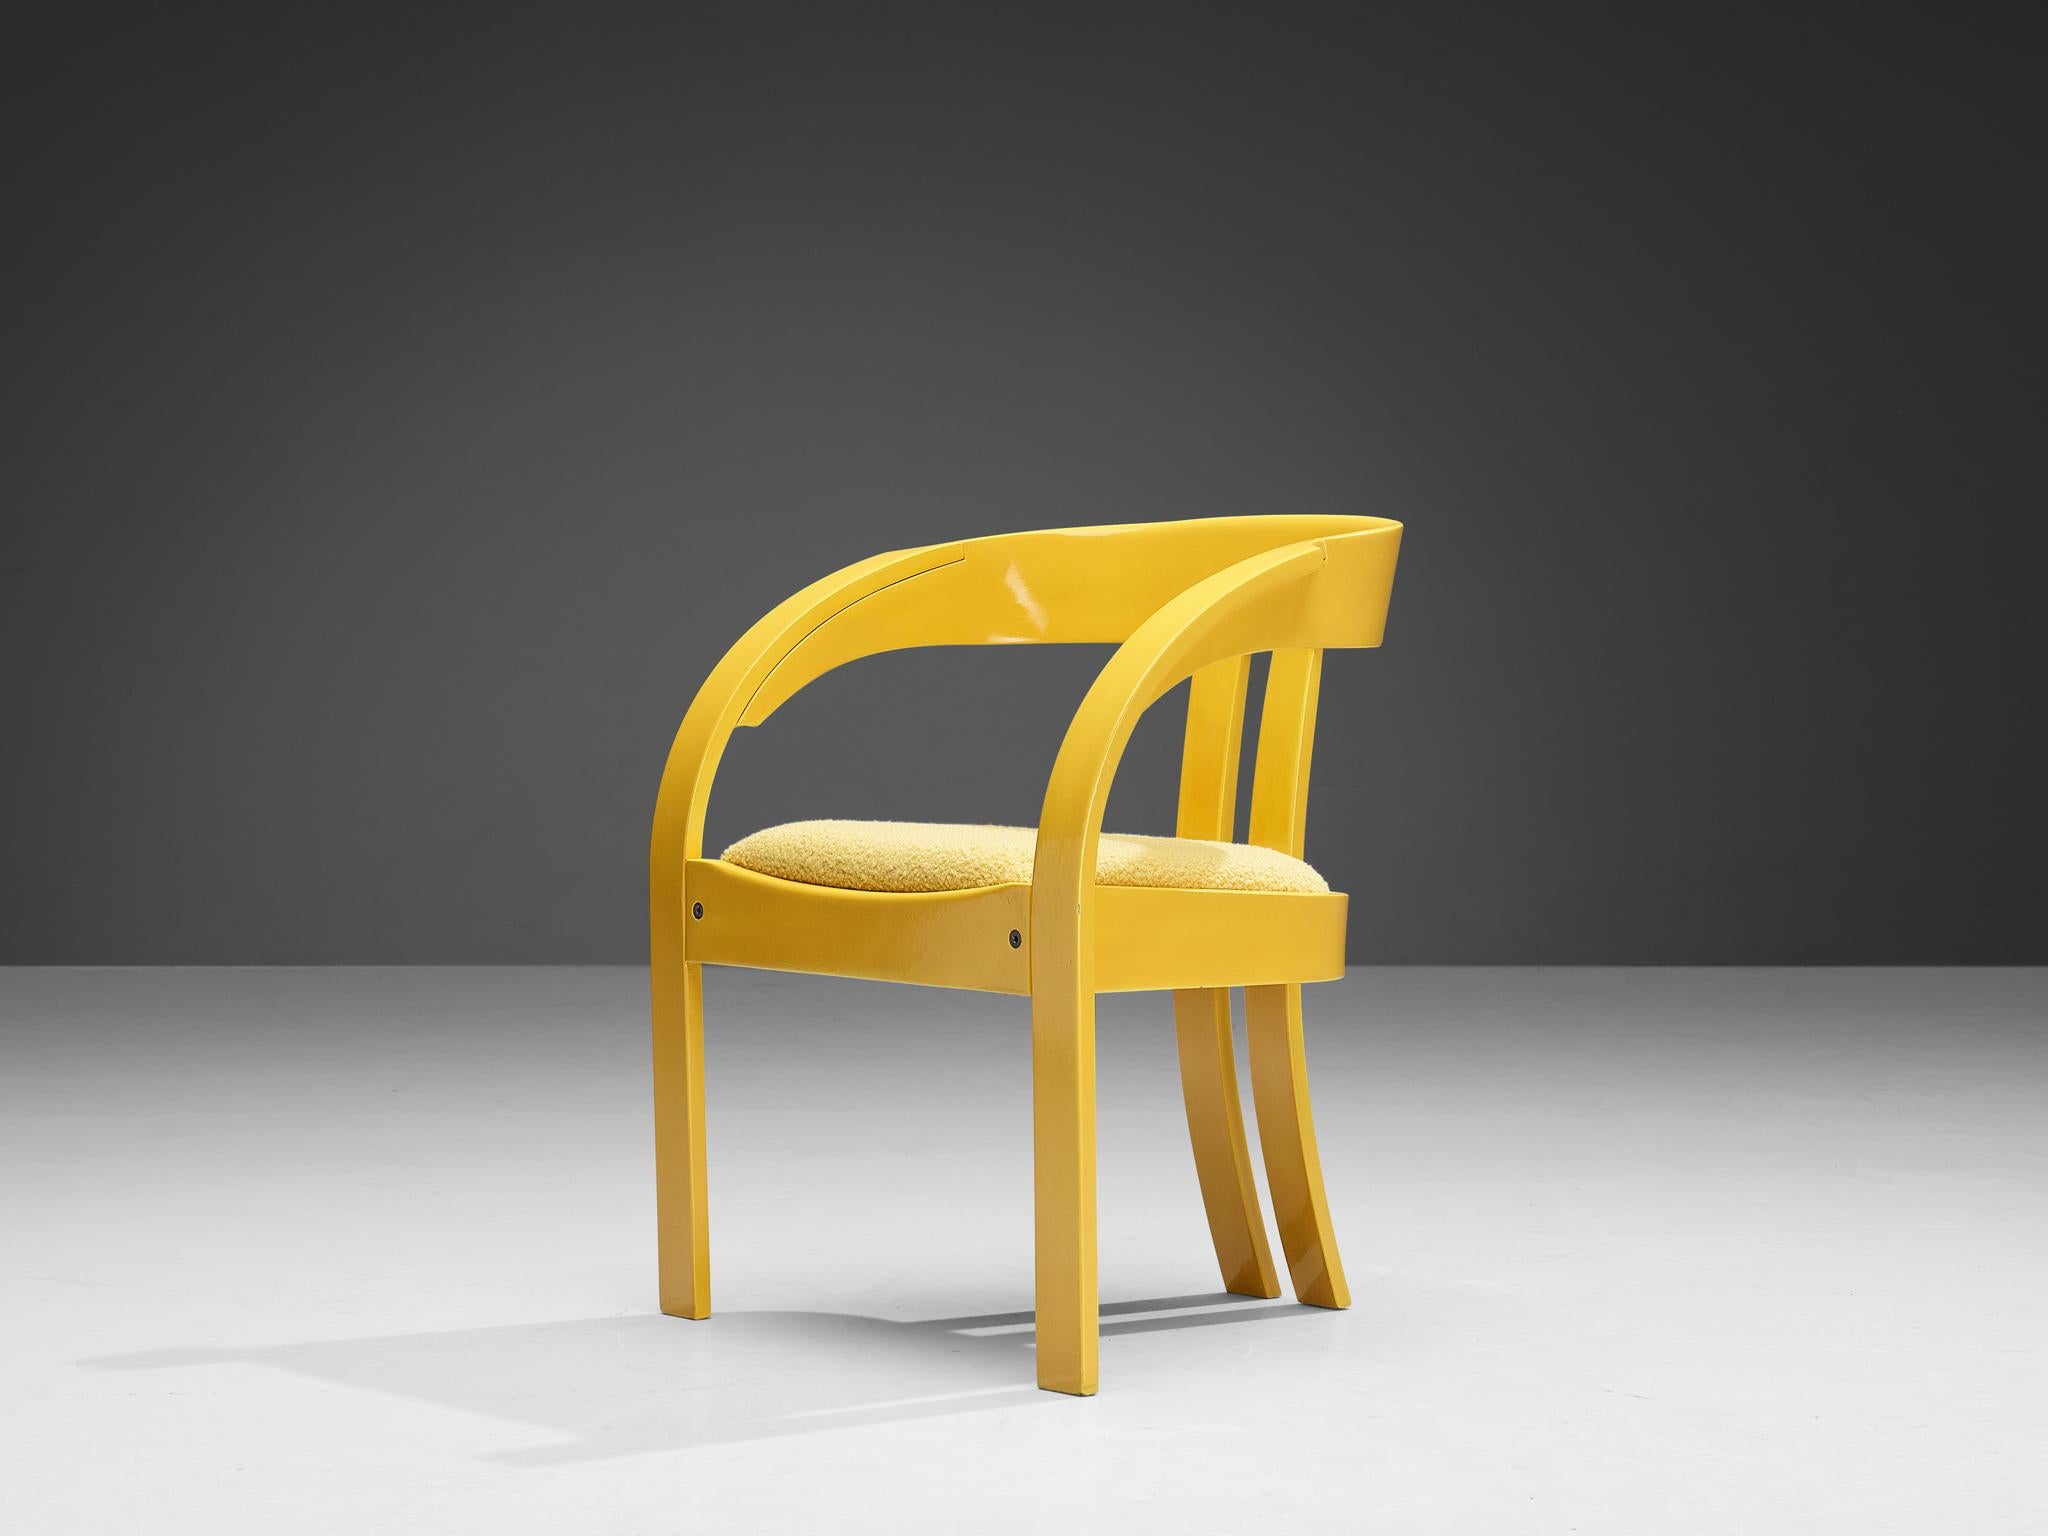 Giovanni Battista Bassi für Poltronova, Sessel Modell 'Elisa', Stoff, lackiertes Holz, Italien, 1960er Jahre 

Dieser wundervoll konstruierte Stuhl basiert auf einer soliden Konstruktion, bei der klare, fließende Linien in das Design einfließen